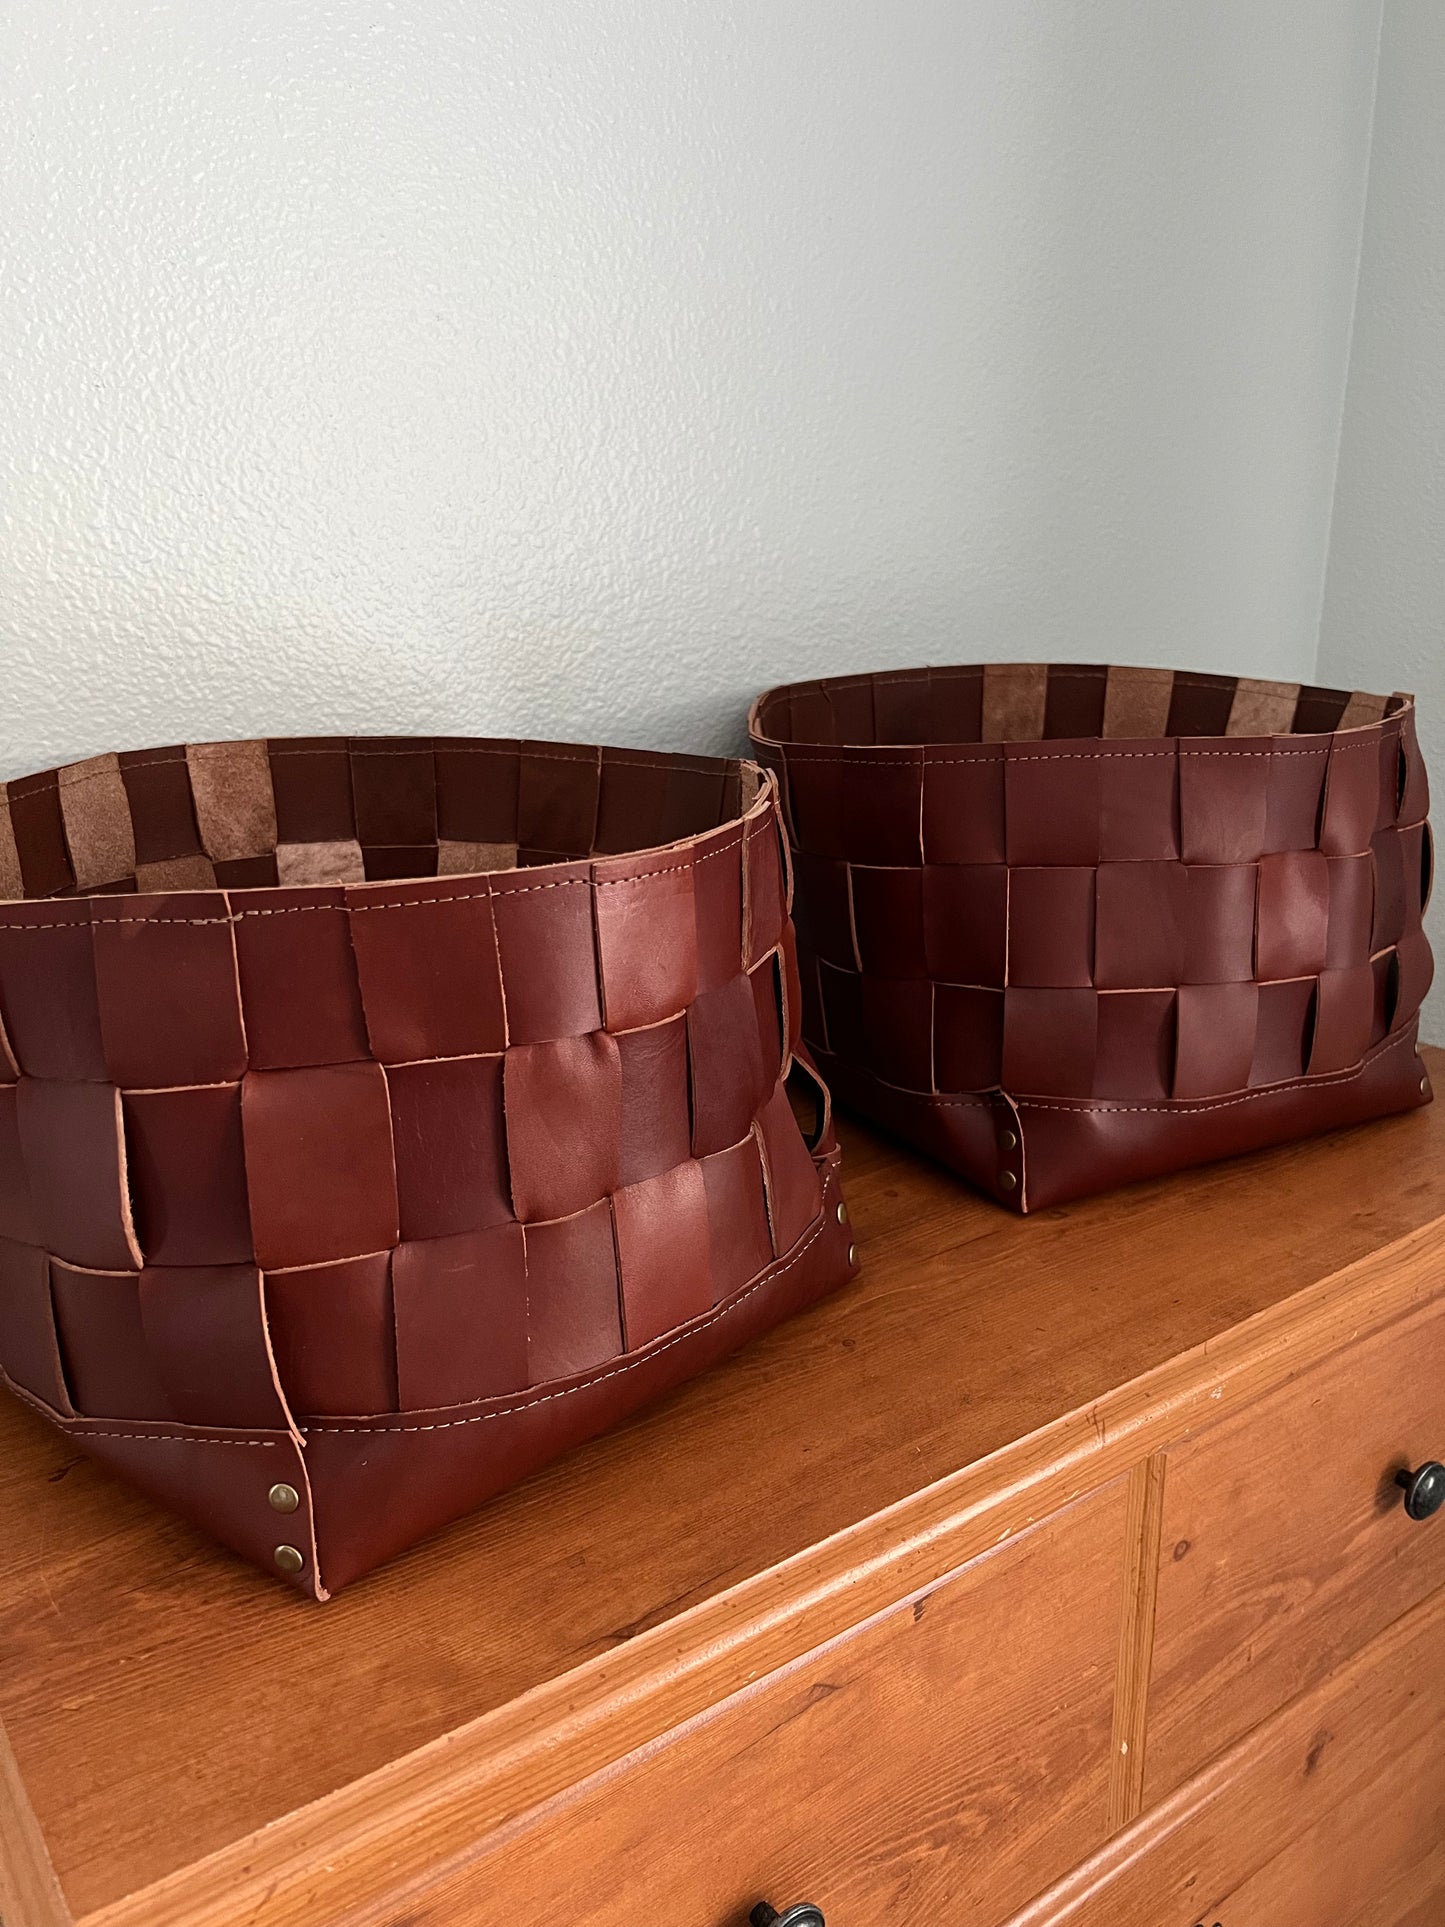 Leather Storage Bin | Woven Leather Bin | Storage Basket | Decorative Storage Container